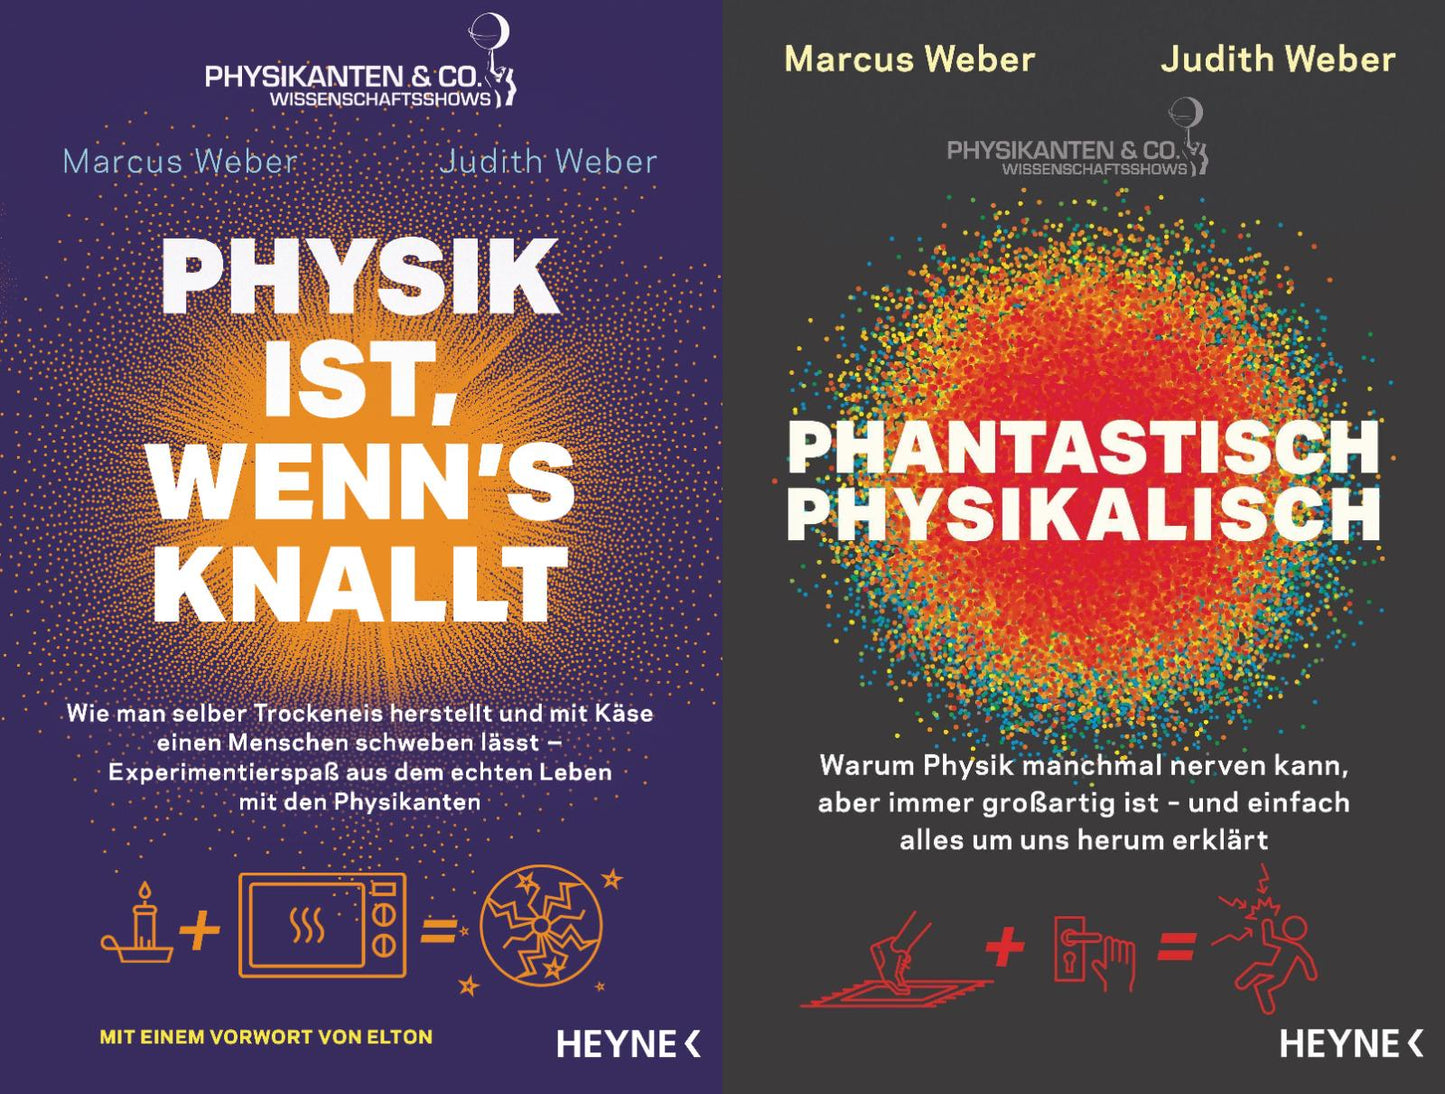 2 phantastische Titel für die Physik in unserem Alltag + 1 exklusives Postkartenset